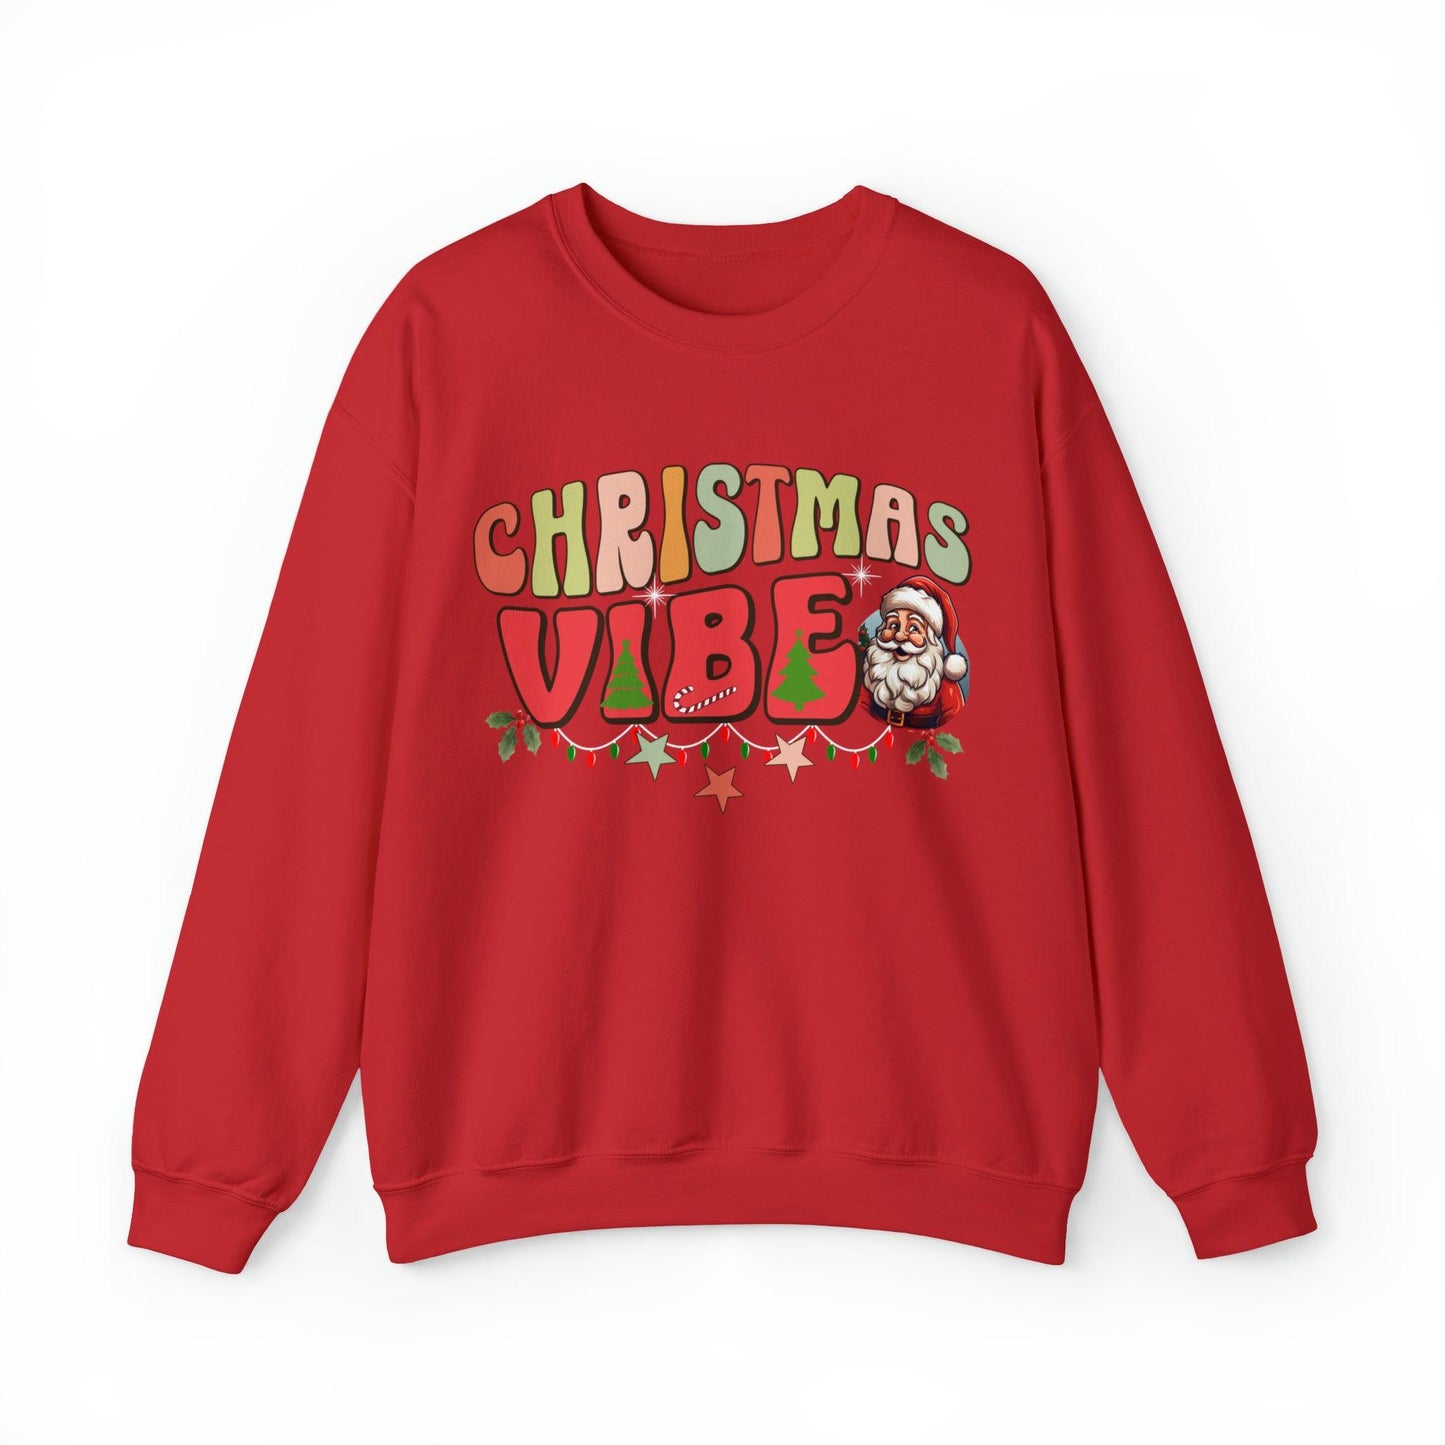 Cute Christmas Vibe Sweatshirt Funny Christmas Shirt Matching Shirts Christmas Vibes Holiday Shirt Cute Christmas Shirt - Giftsmojo